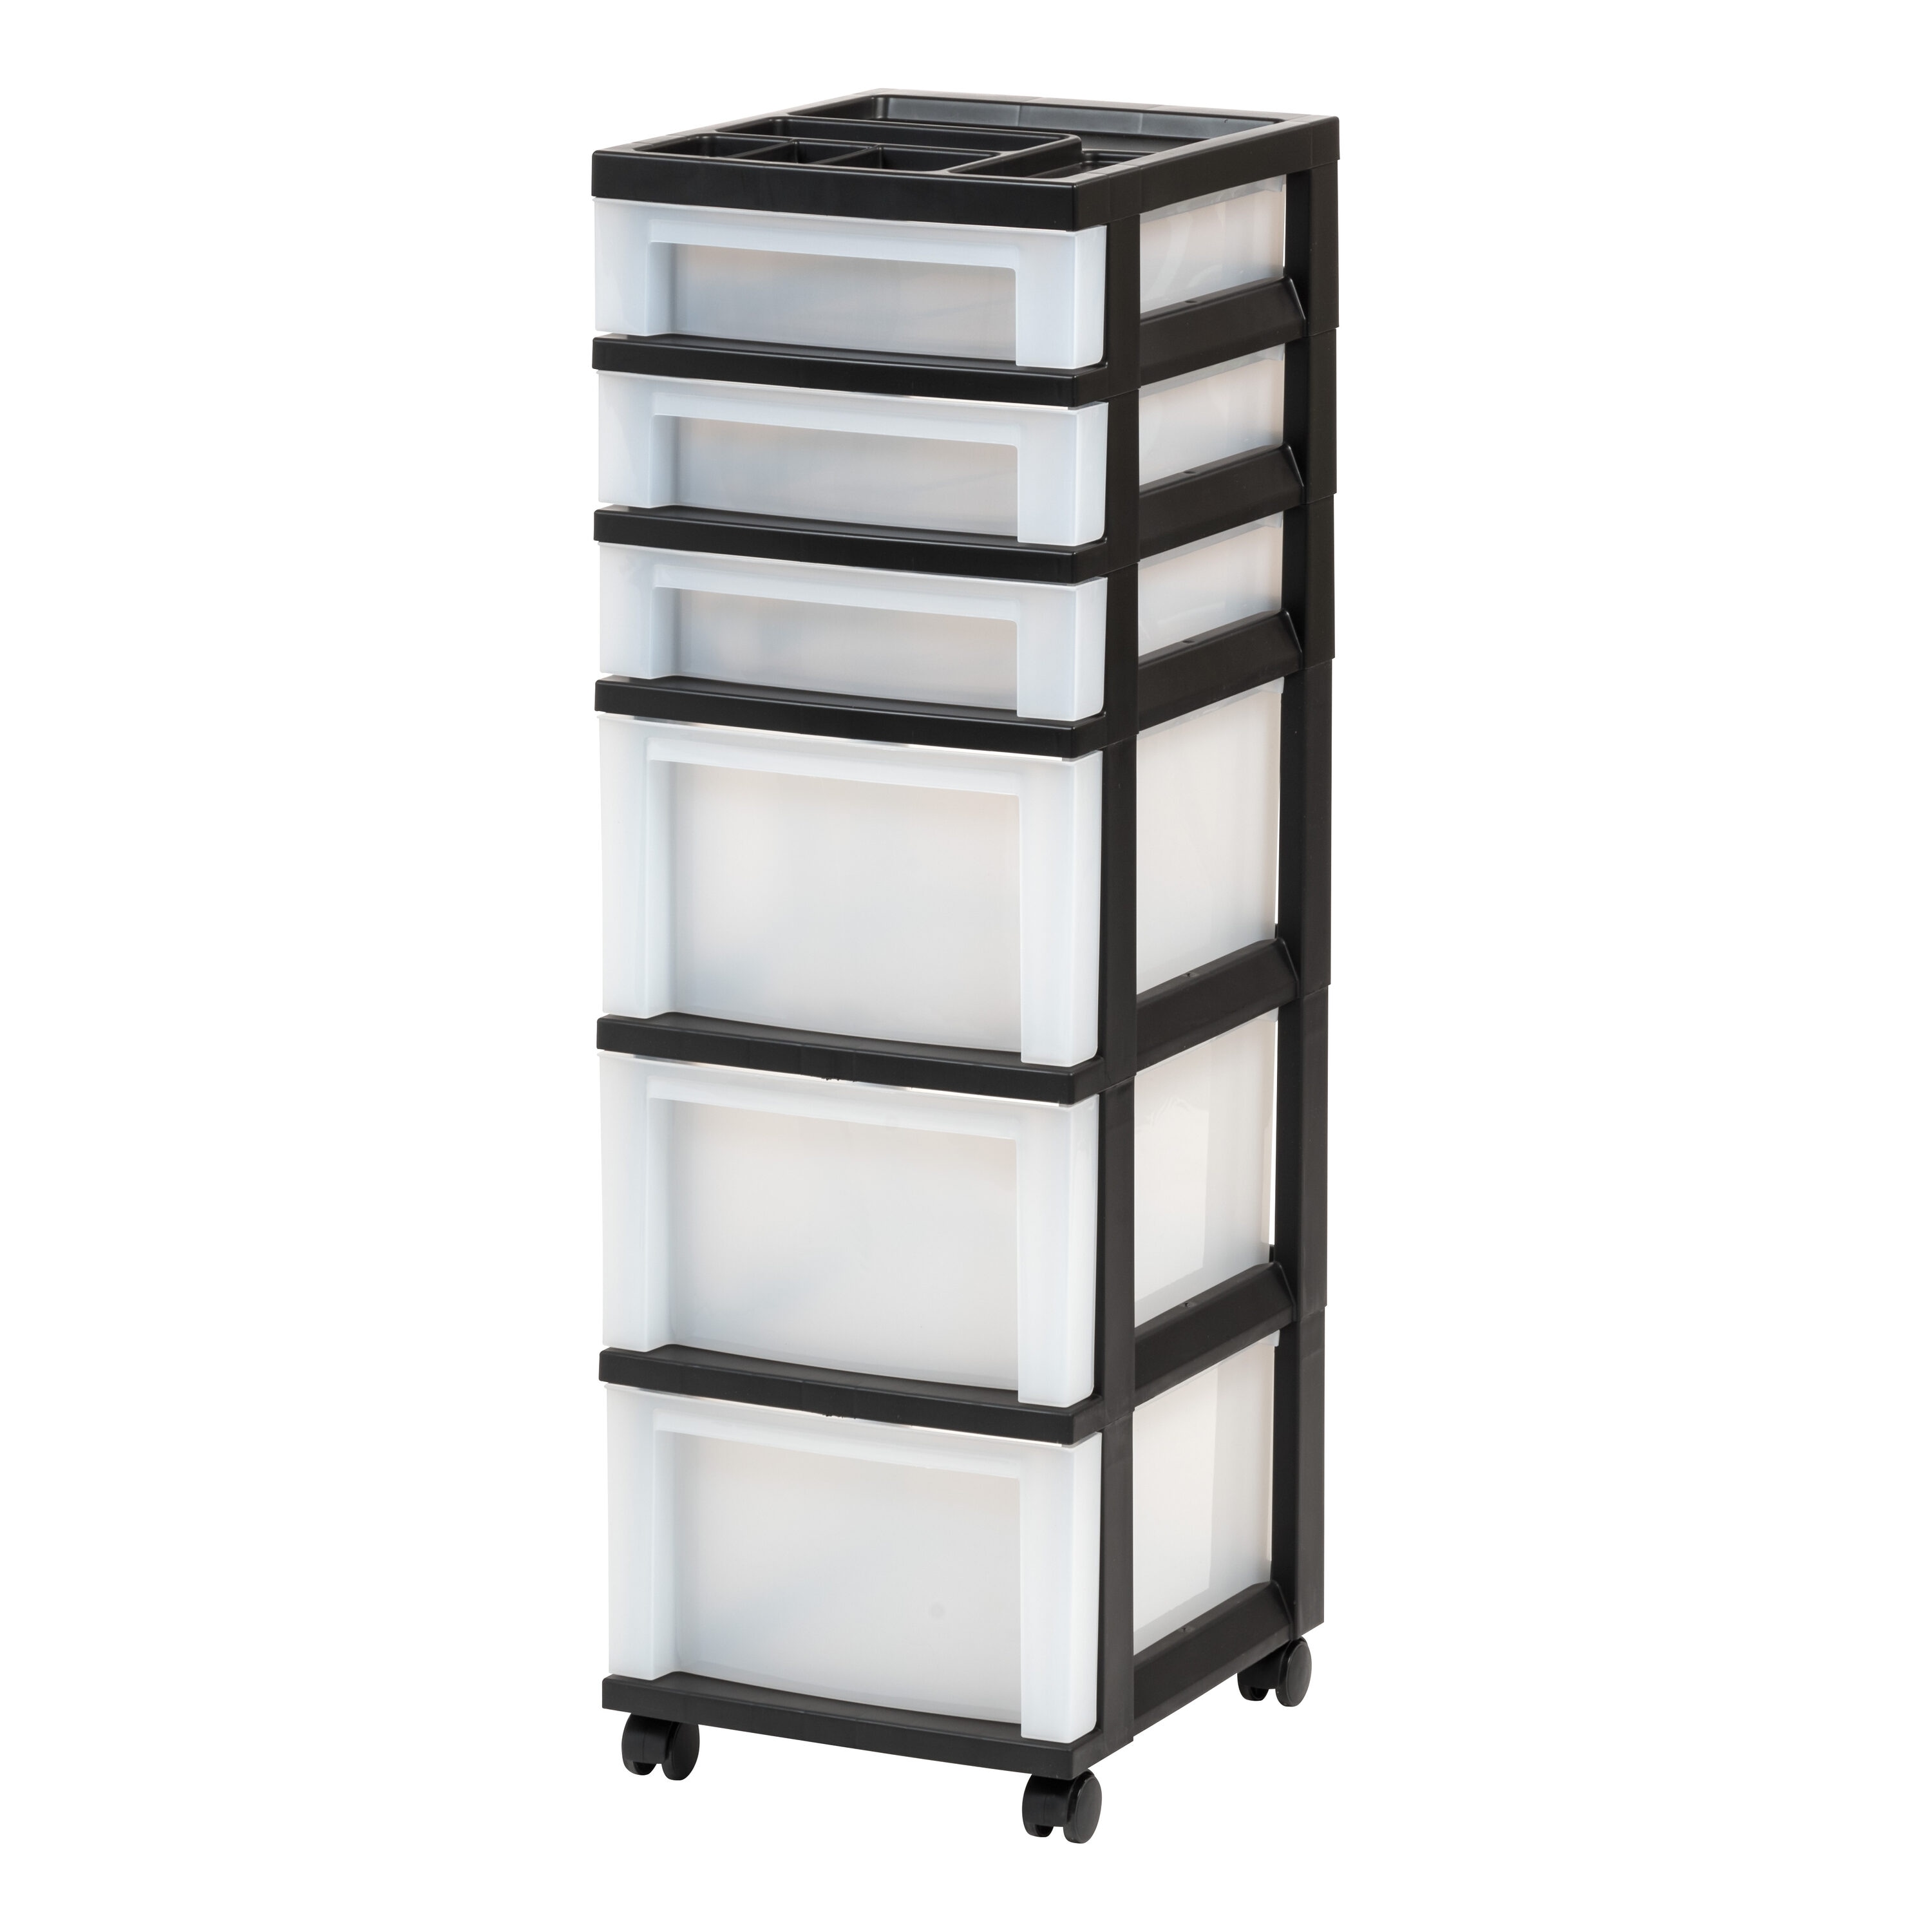 Iris 6 Drawer Storage Cart with Organizer Top black/pearl